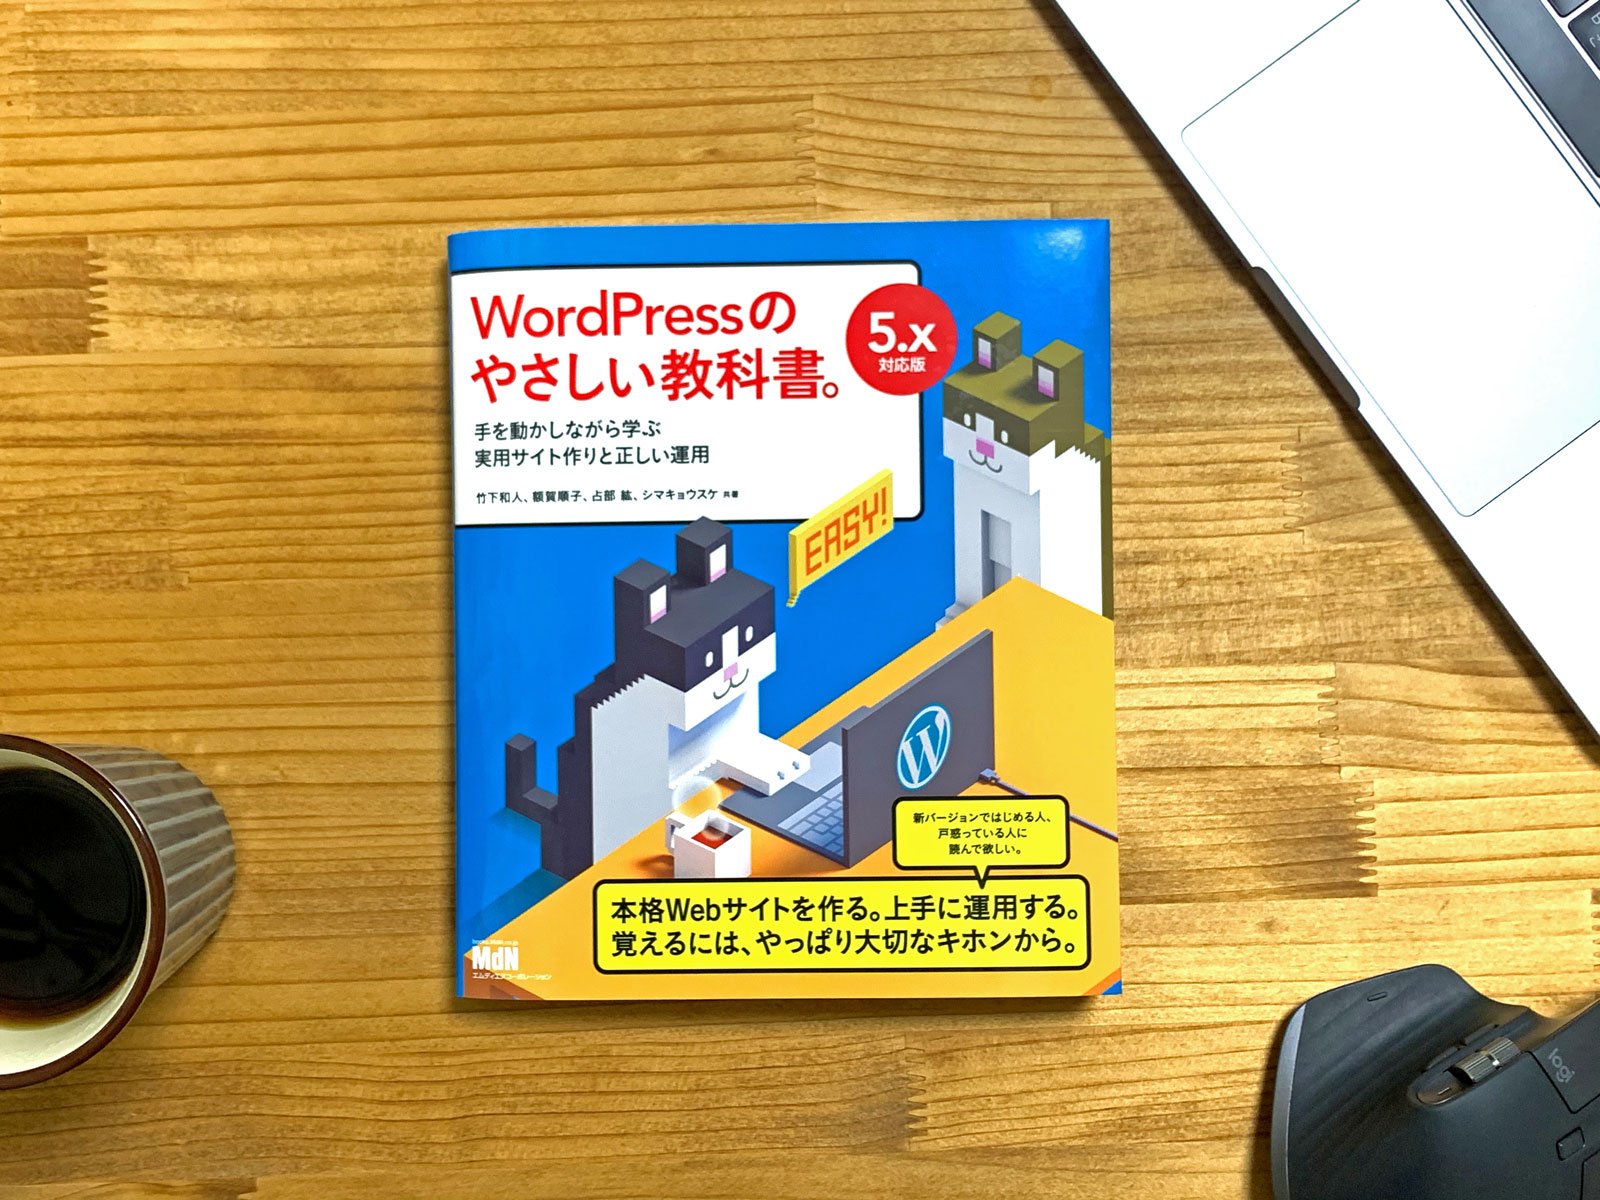 まるでWordPressのマニュアルのような詳細な解説「WordPressのやさしい教科書。」